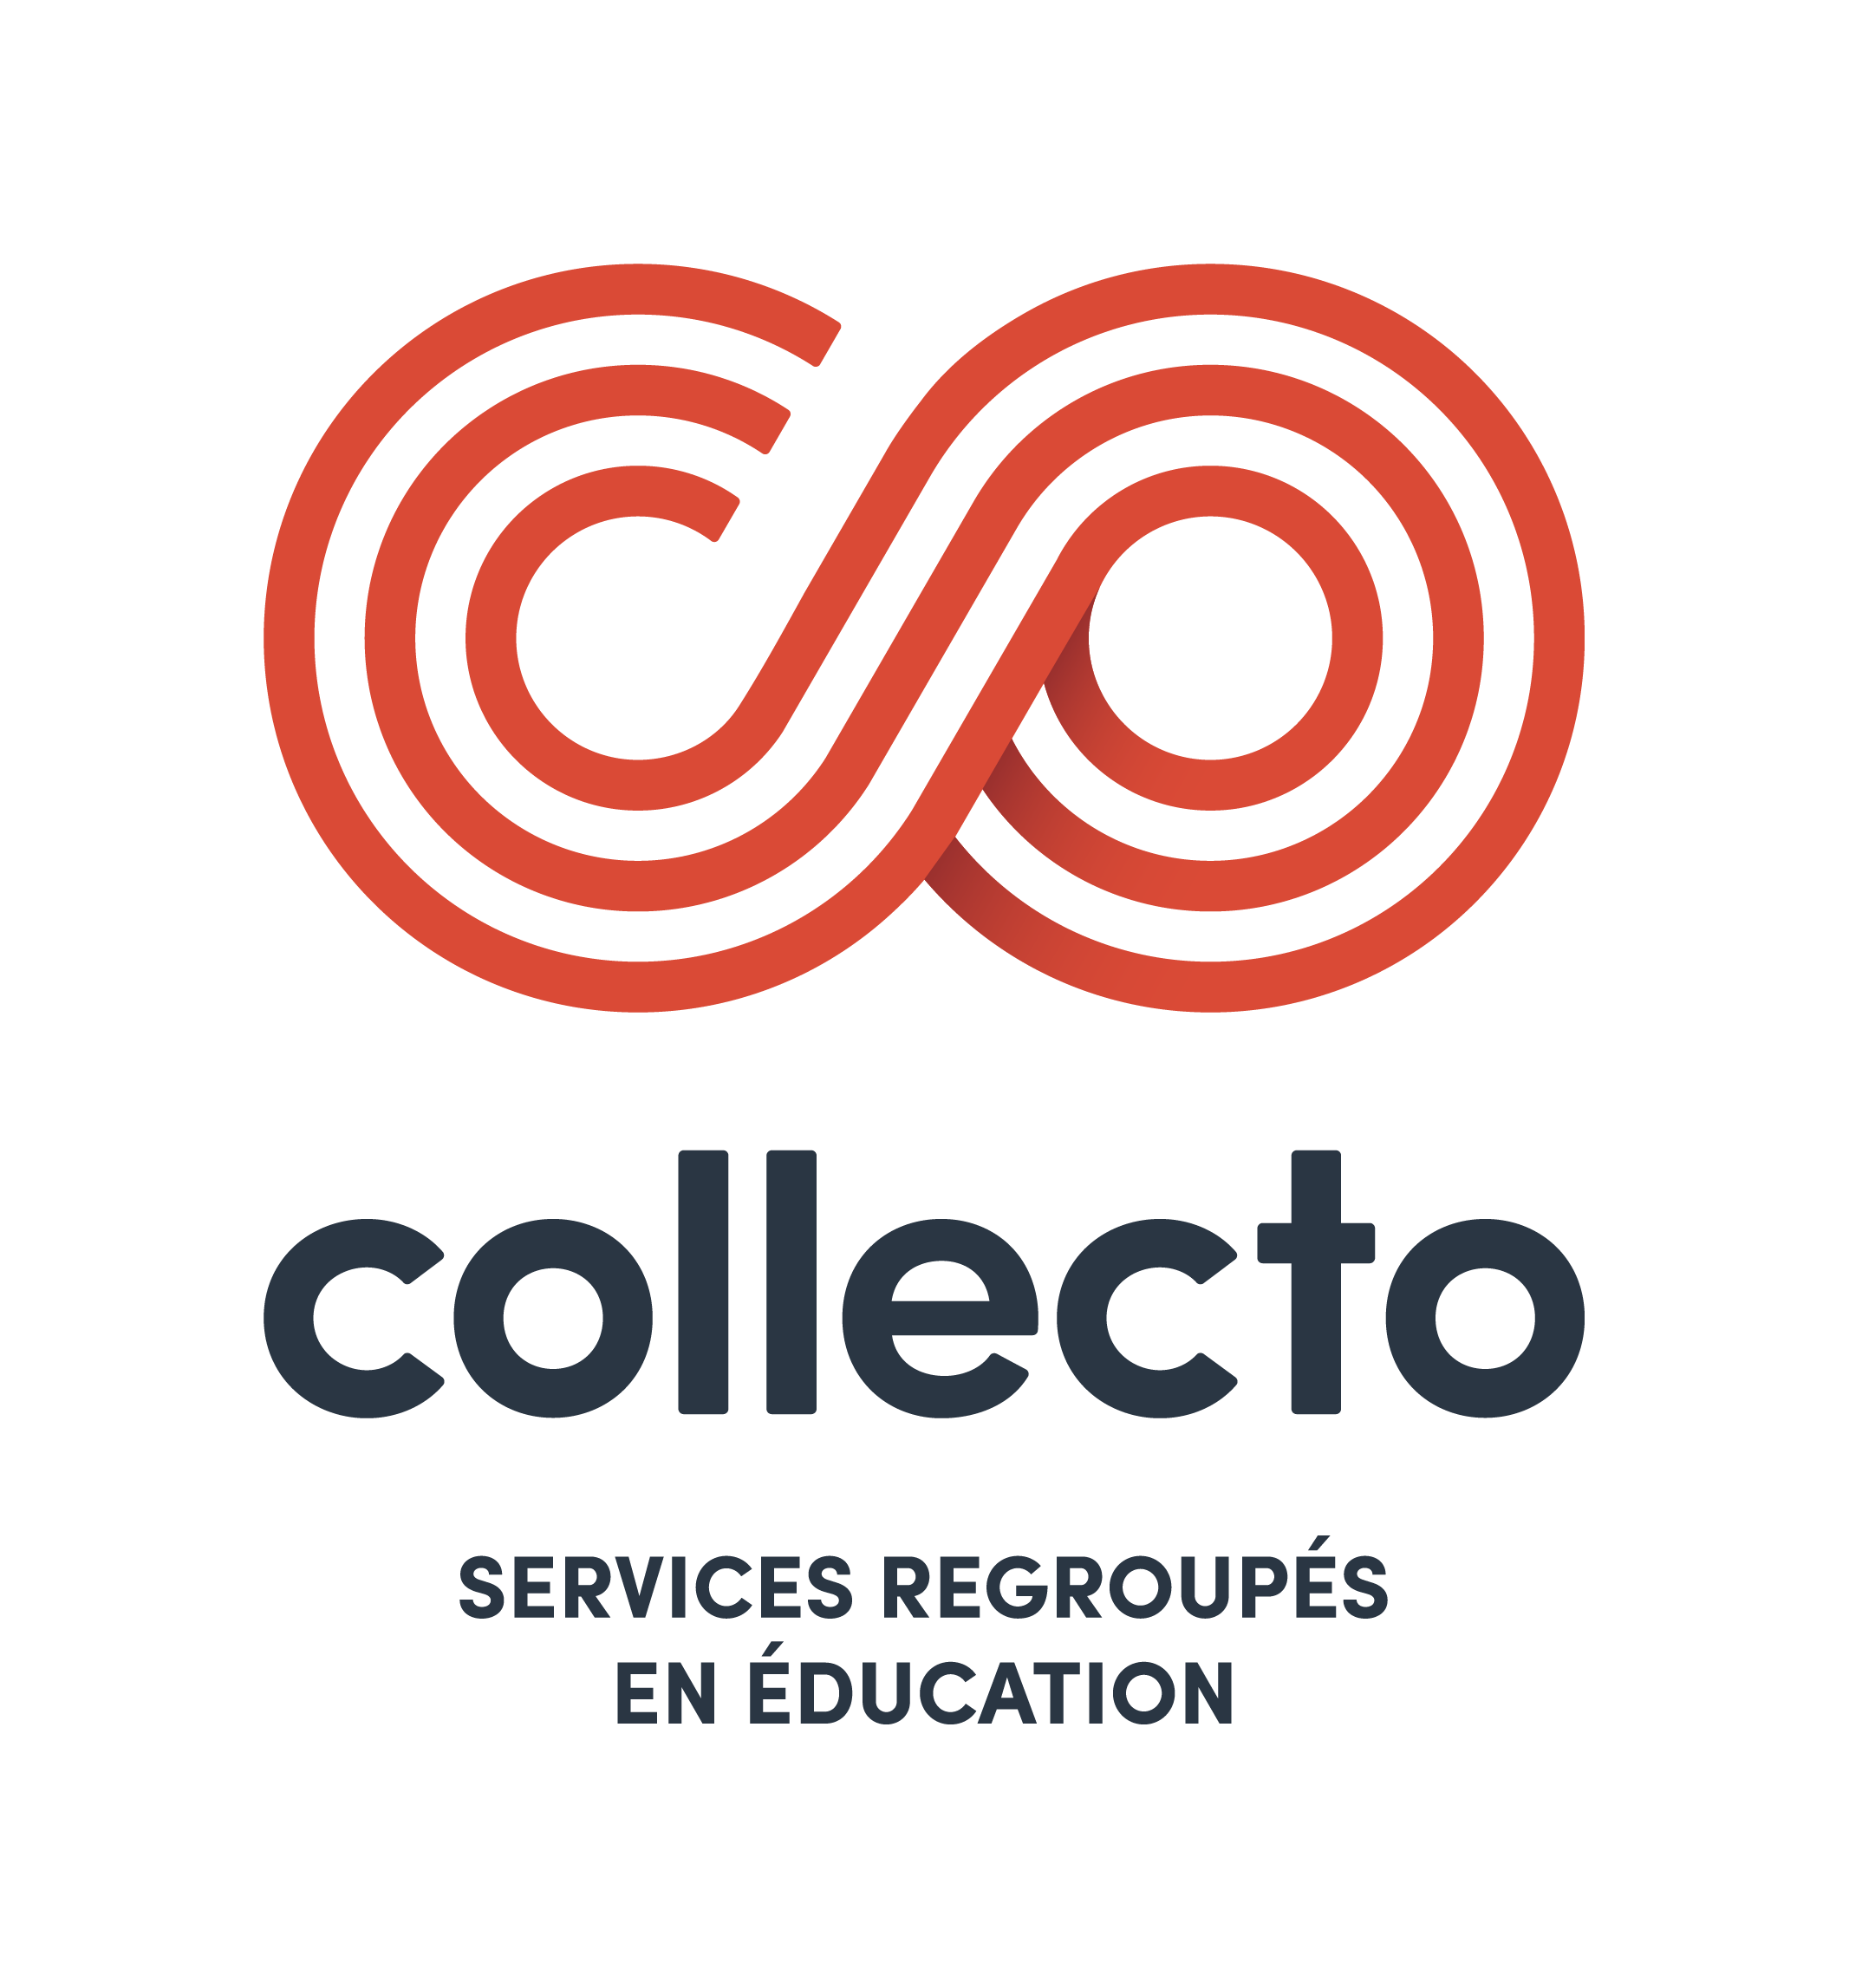 Collecto - Services regroupés en éducation